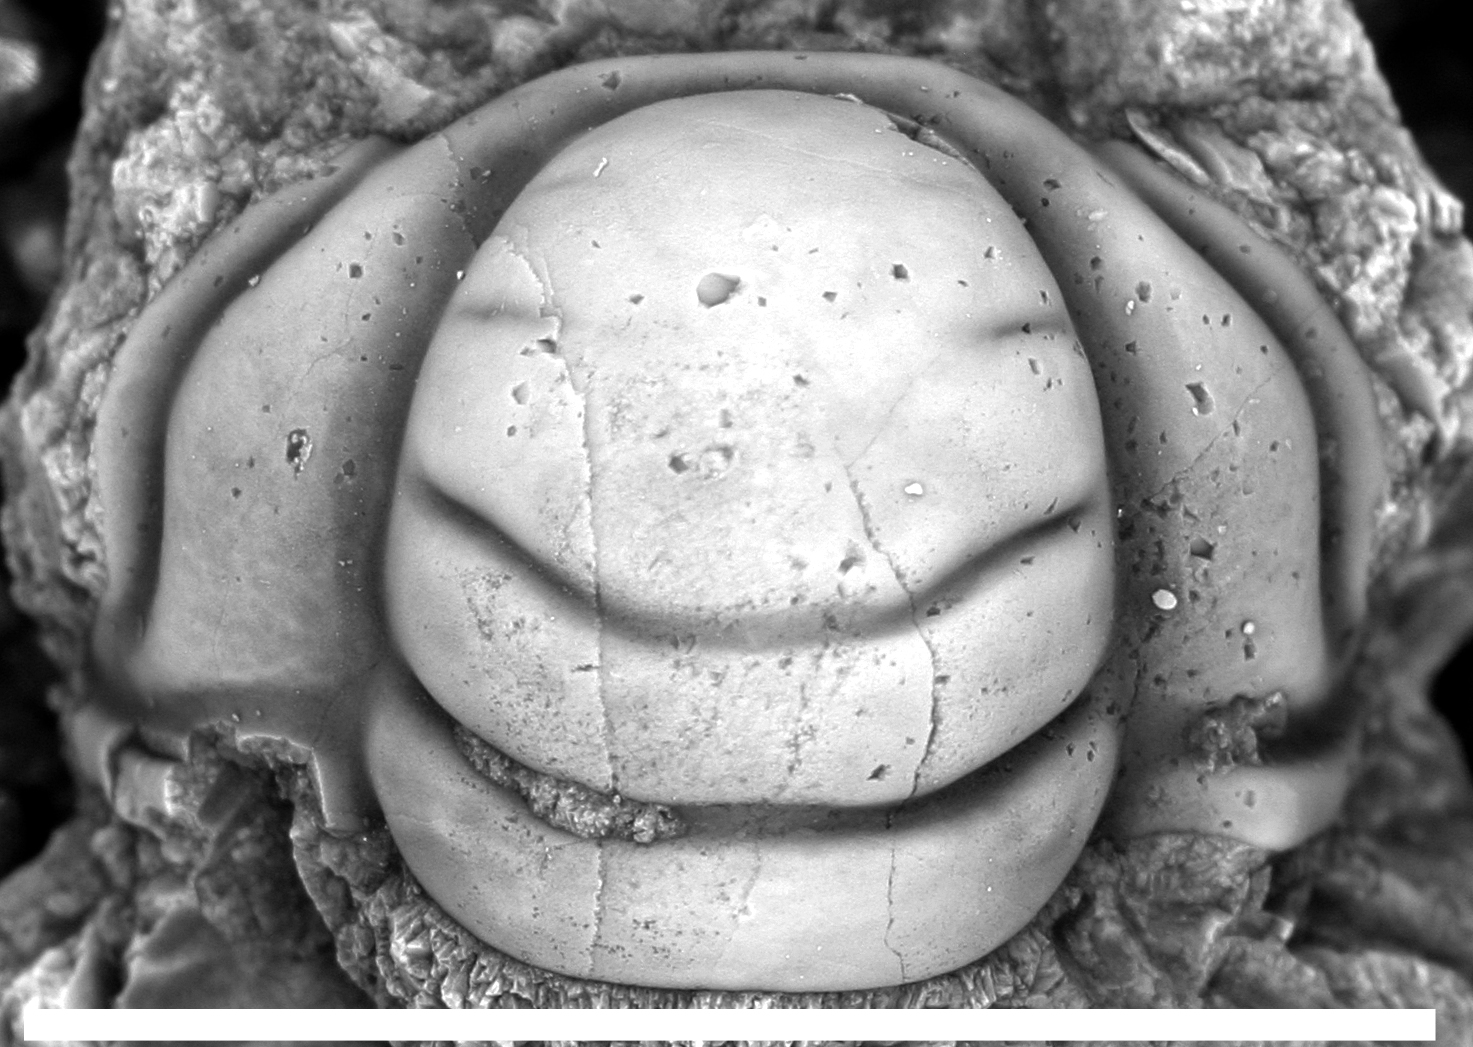 Trilobite cranidium